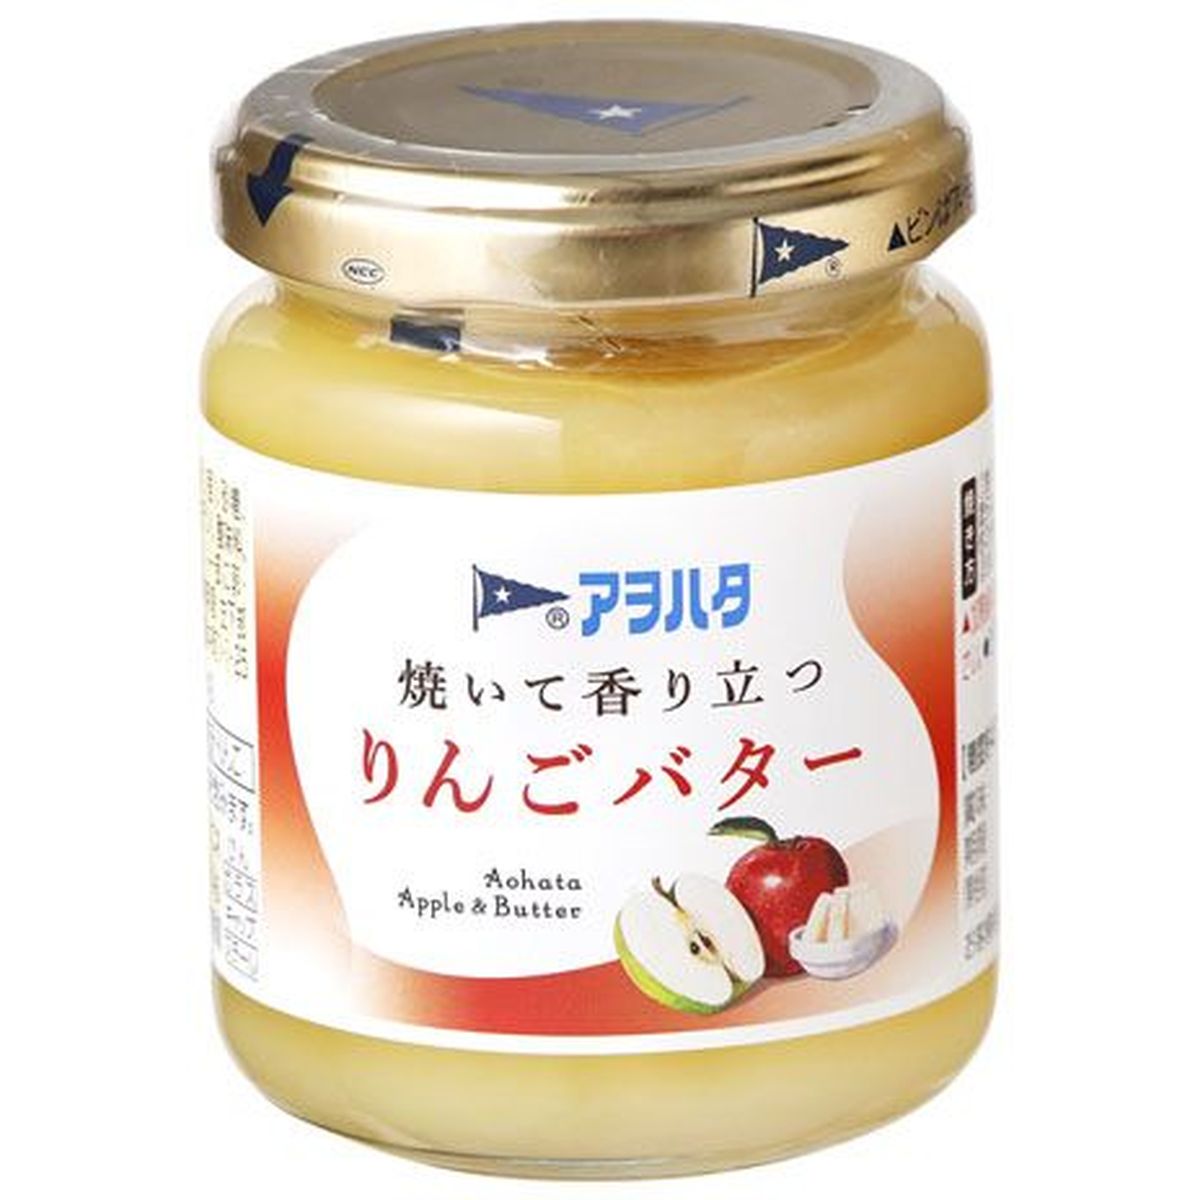 【12個入リ】アヲハタ 焼イテ香リ立ツリンゴバター 145g